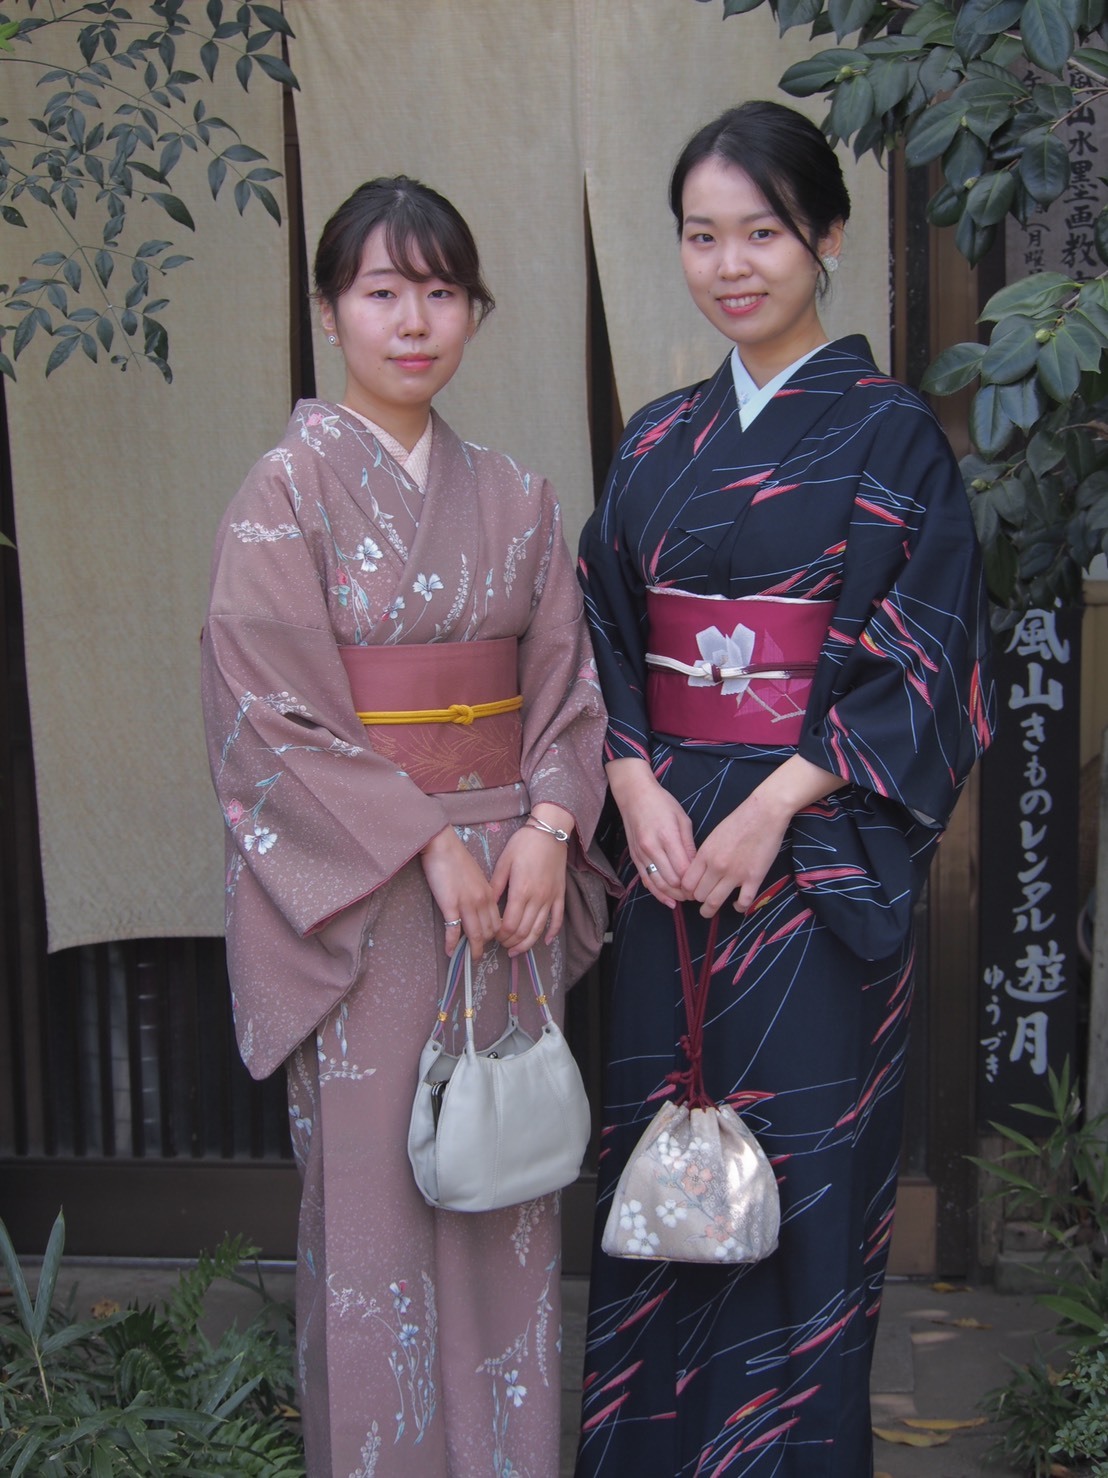 レトロなお着物とお太鼓結びの帯。 : 京都嵐山 着物レンタル「遊月